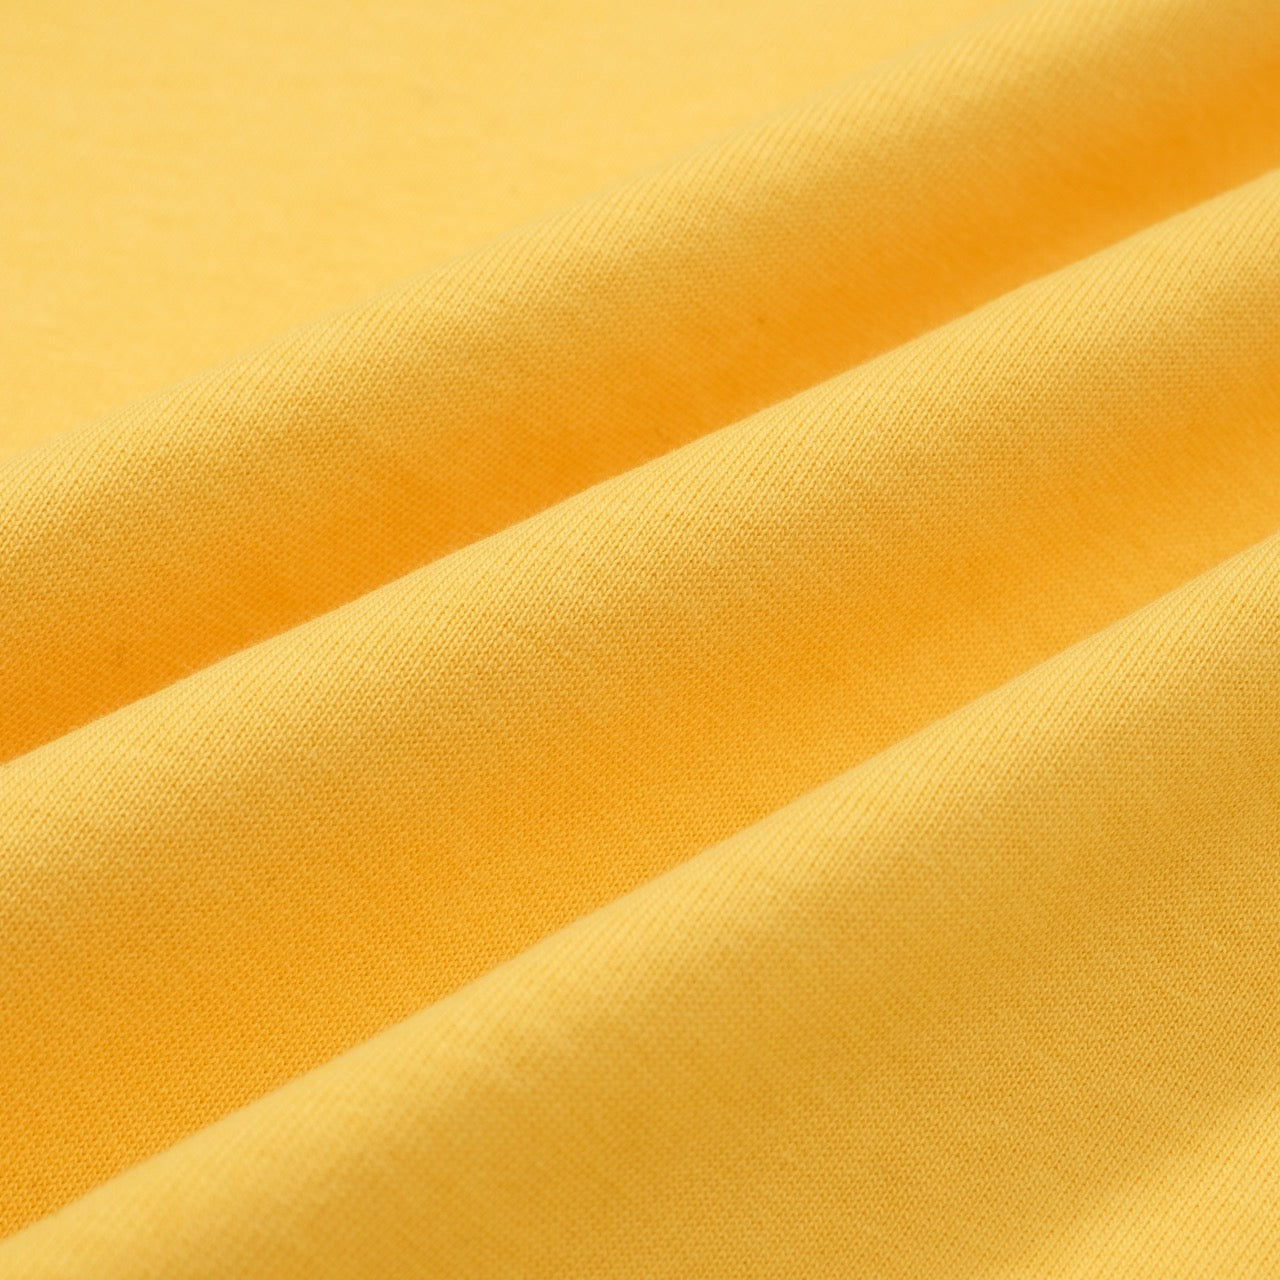 Geel katoenen T-shirt met ronde hals